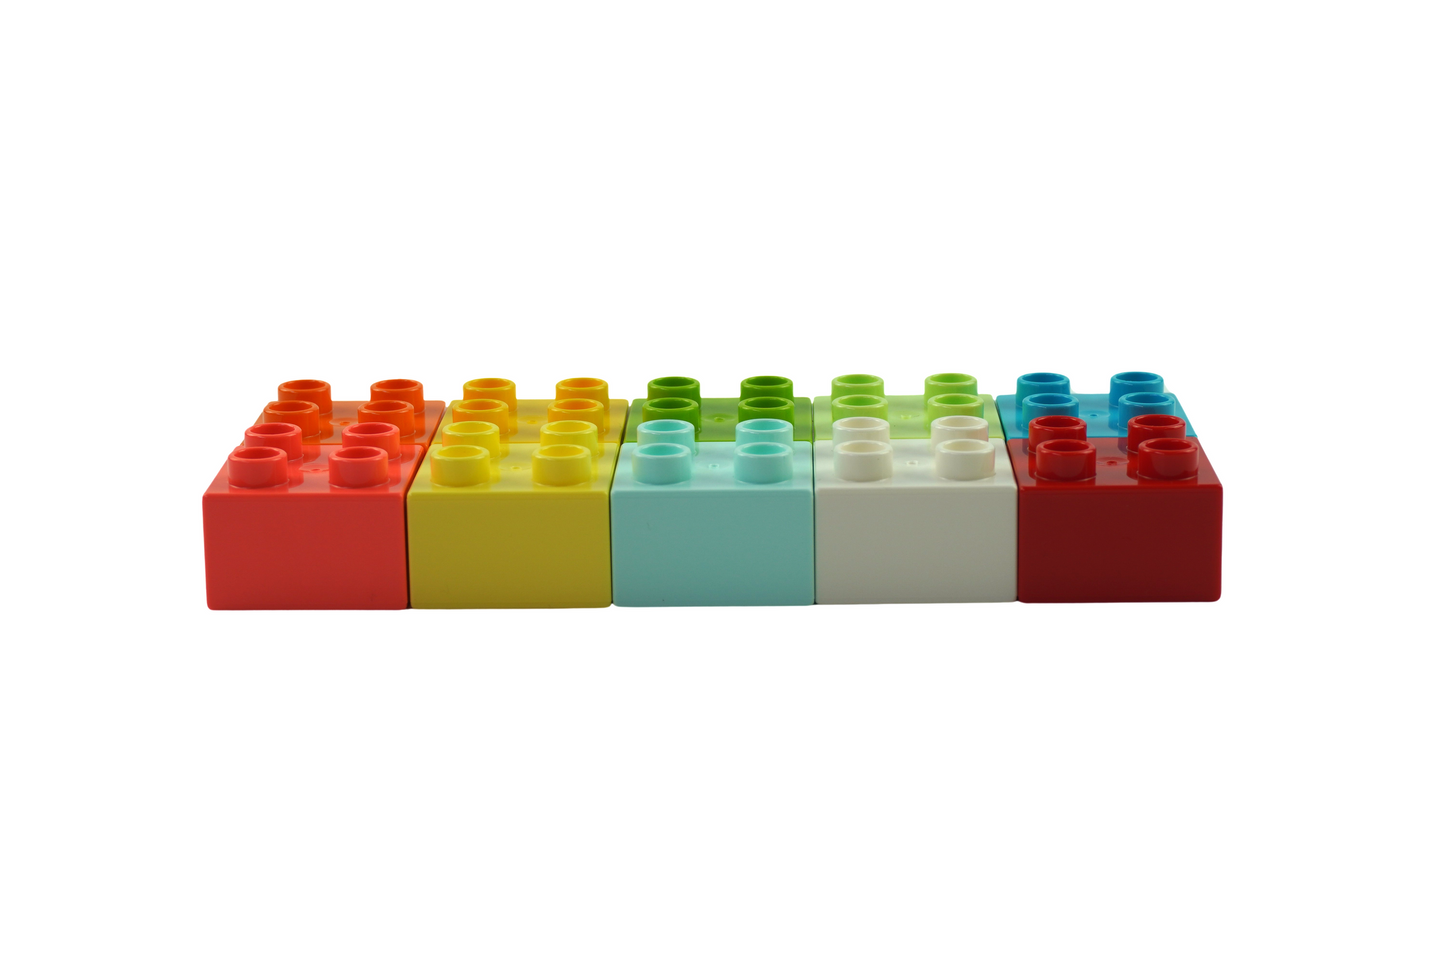 LEGO® DUPLO® 30 2x4 Steine und 100 2x2 Steine Bunt Gemischt - 3437 3011 NEU! Menge 130x